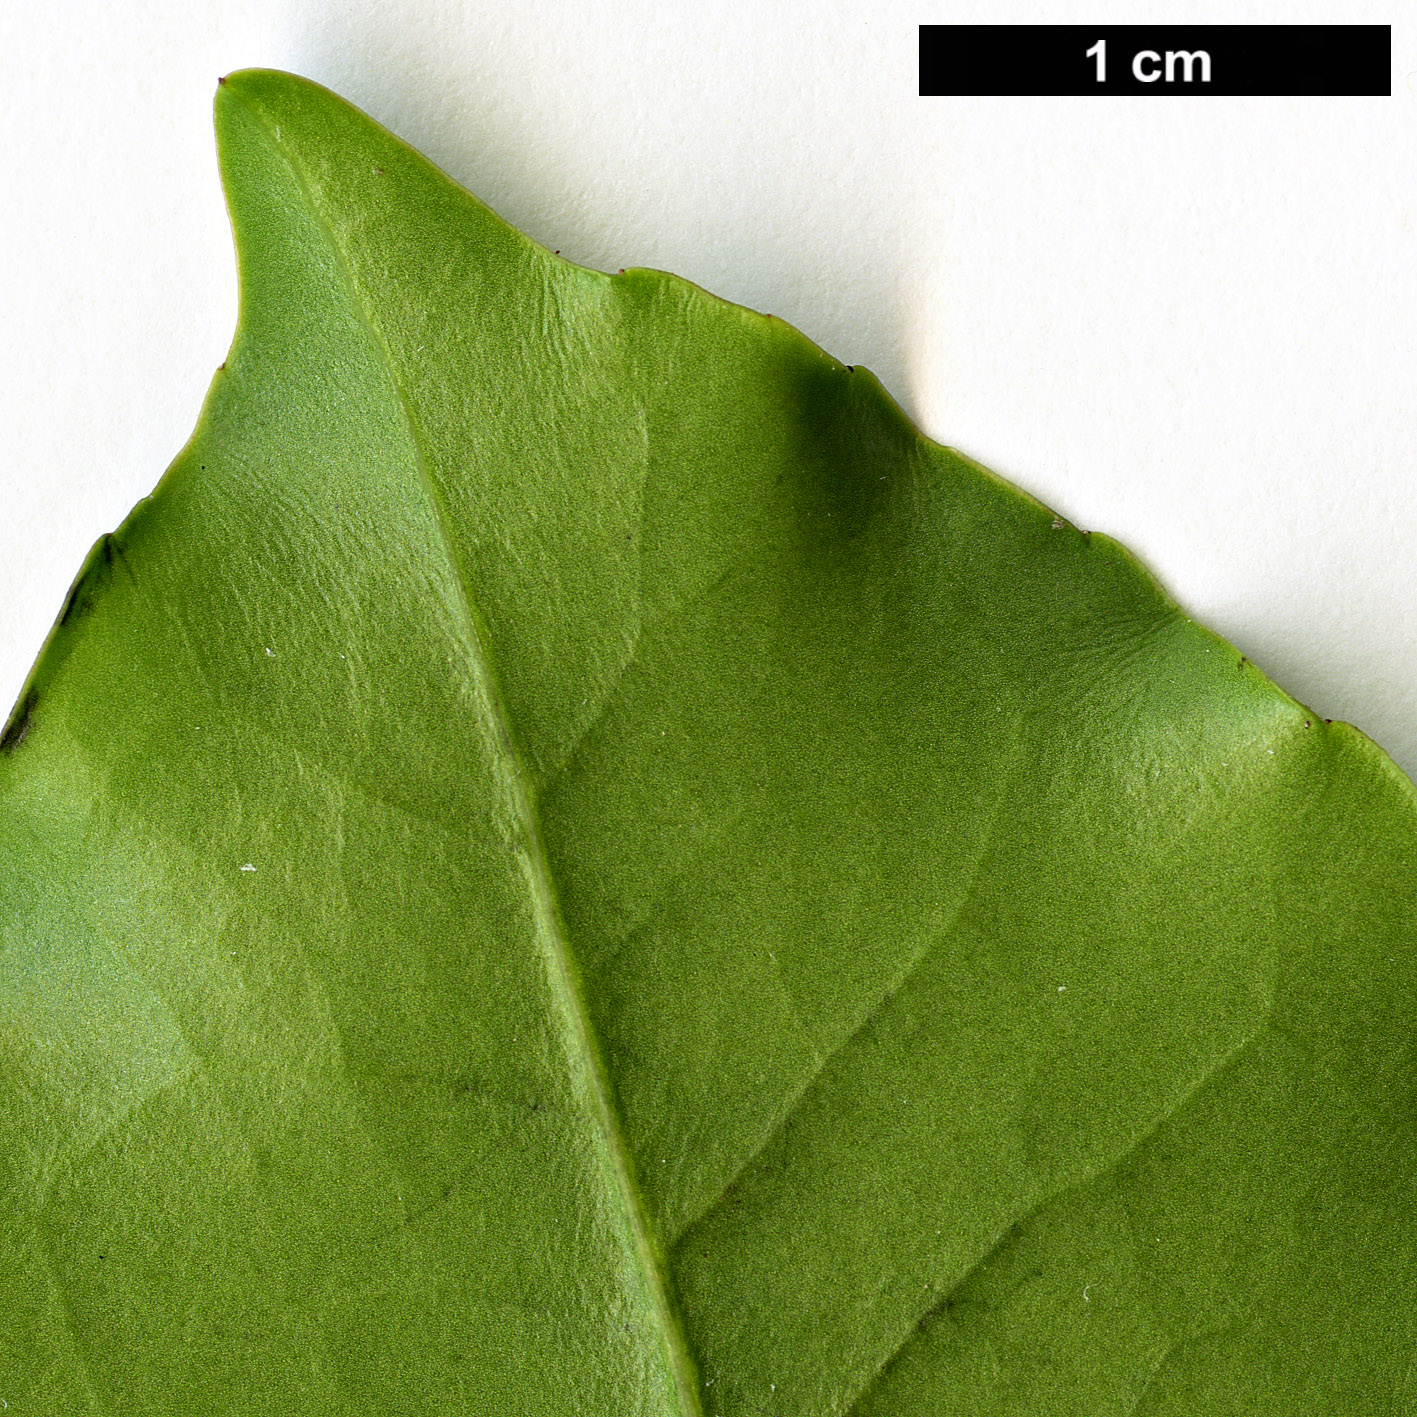 High resolution image: Family: Aquifoliaceae - Genus: Ilex - Taxon: discolor - SpeciesSub: var. tolucana